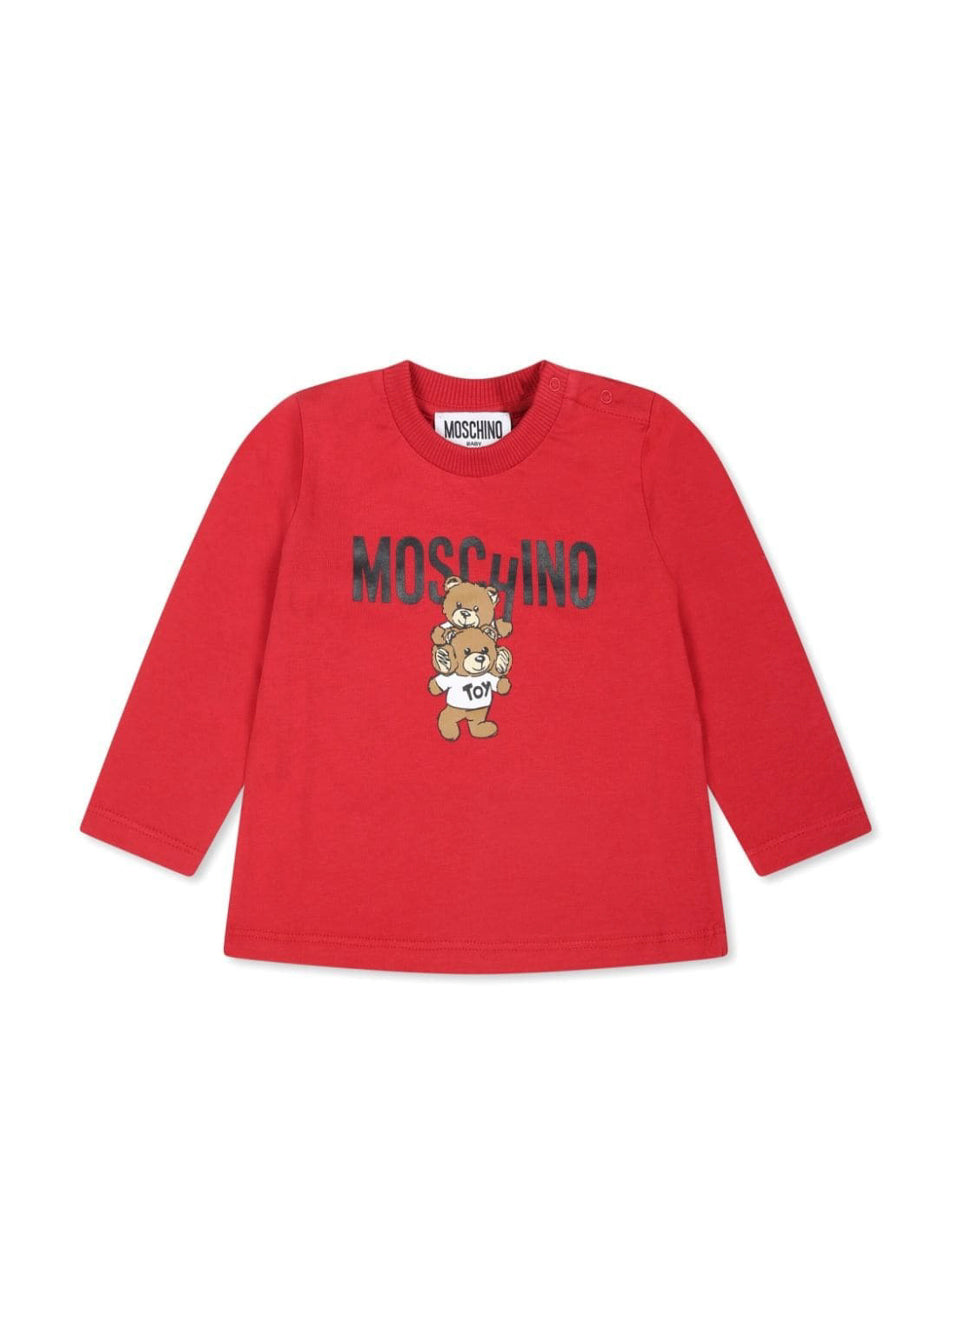 Moschino Kids Blusa Rossa con Stampa Logo Teddy Bear per Neonati 